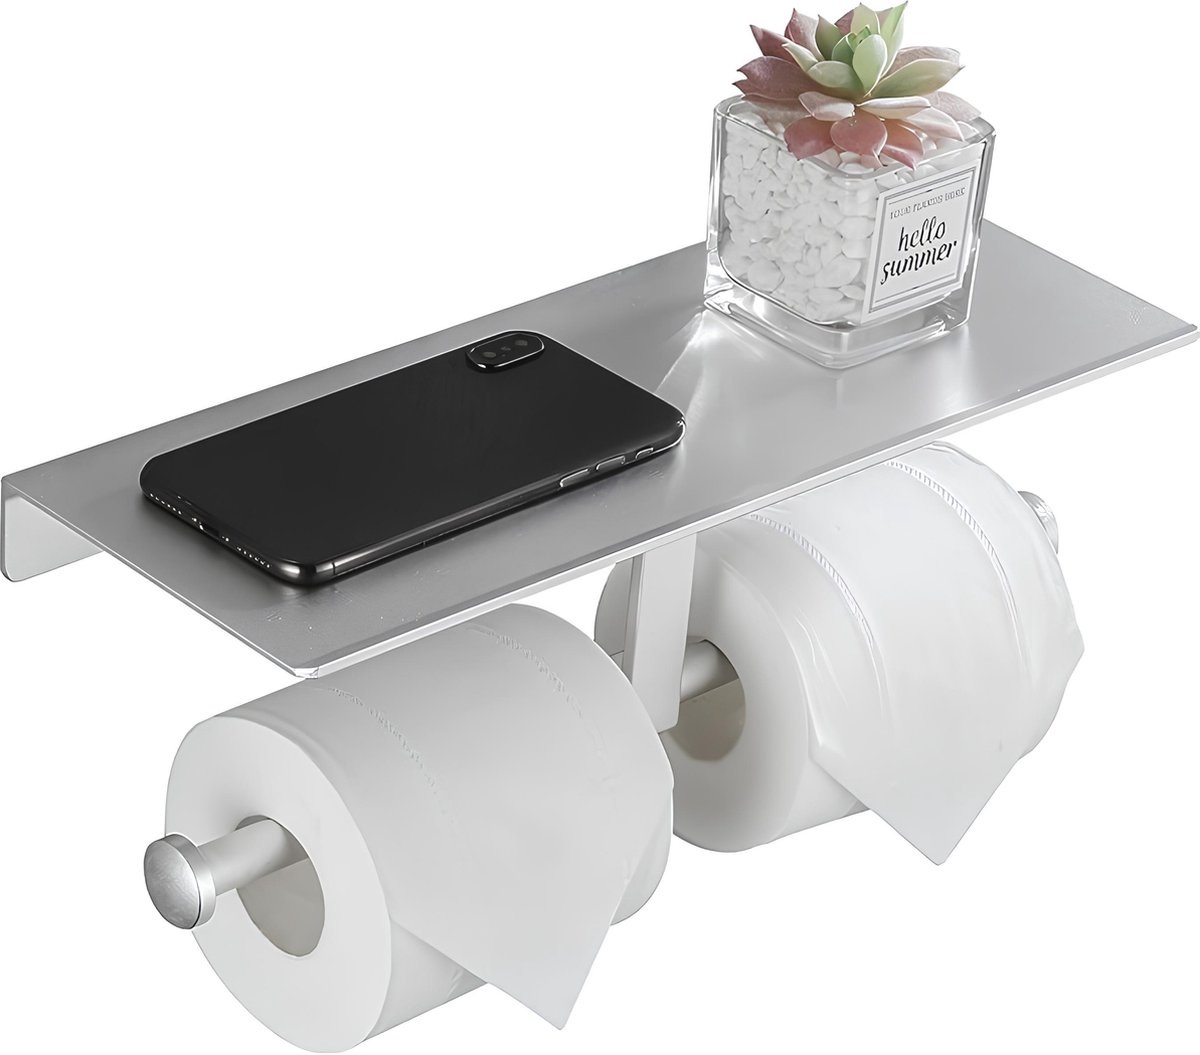 TAKE® Porte-rouleau de papier toilette de rechange [4 rouleaux] +  porte-papier toilette en bois pour le mur – Rangement de papier toilette  100 %